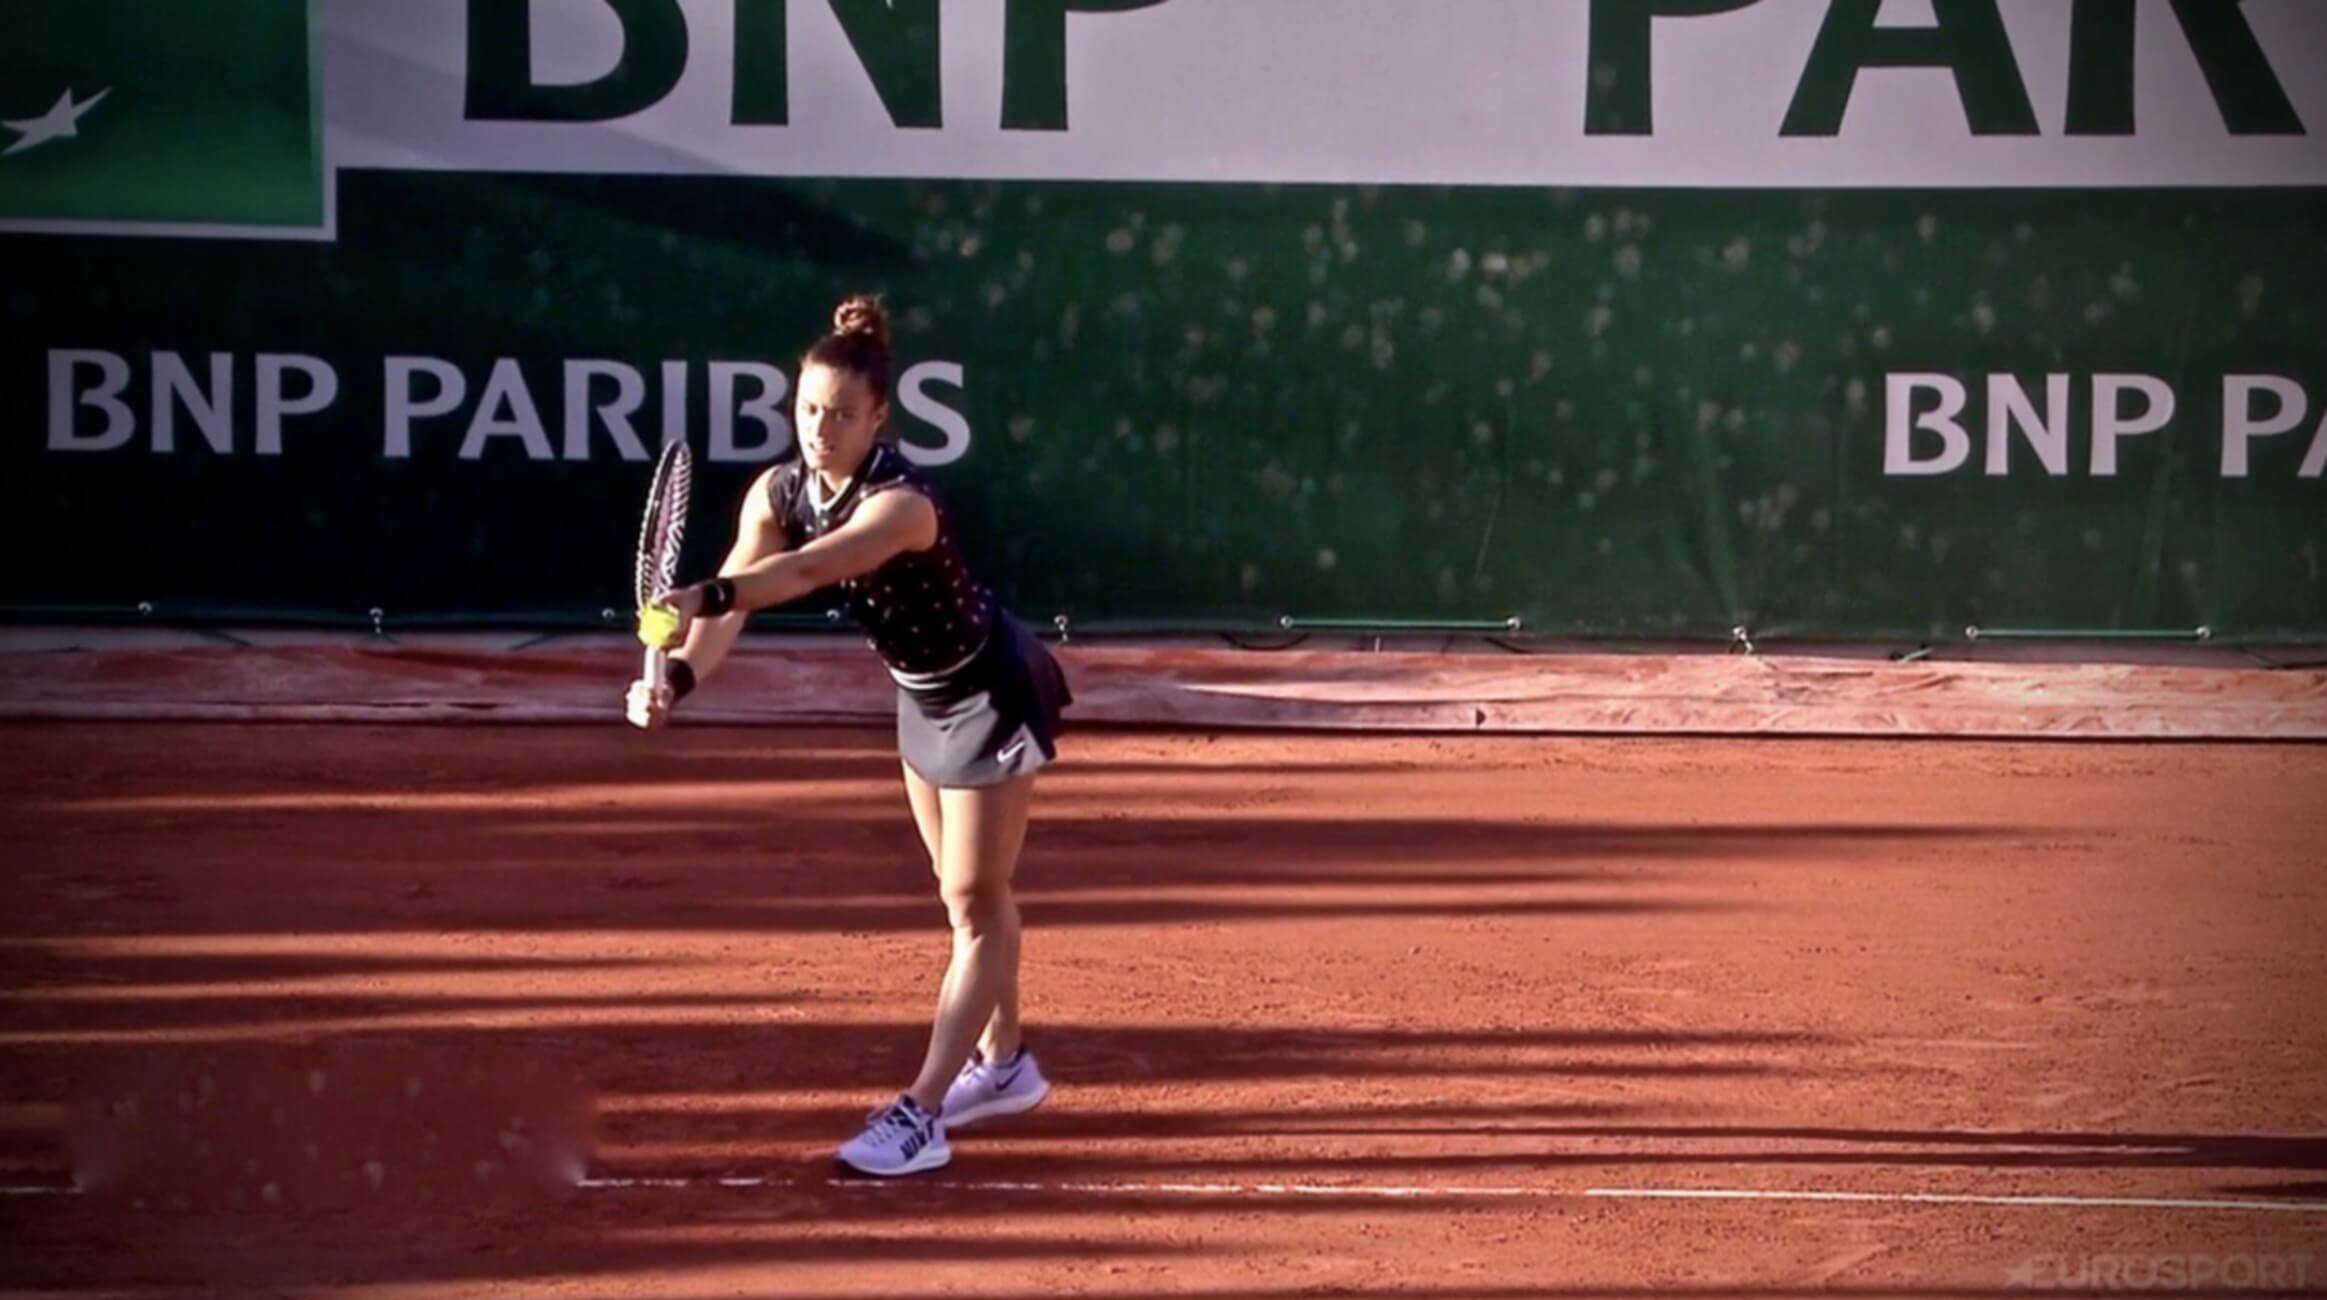 “Σίφουνας” η Σάκκαρη στο Roland Garros! Έκανε πλάκα στον πρώτο γύρο